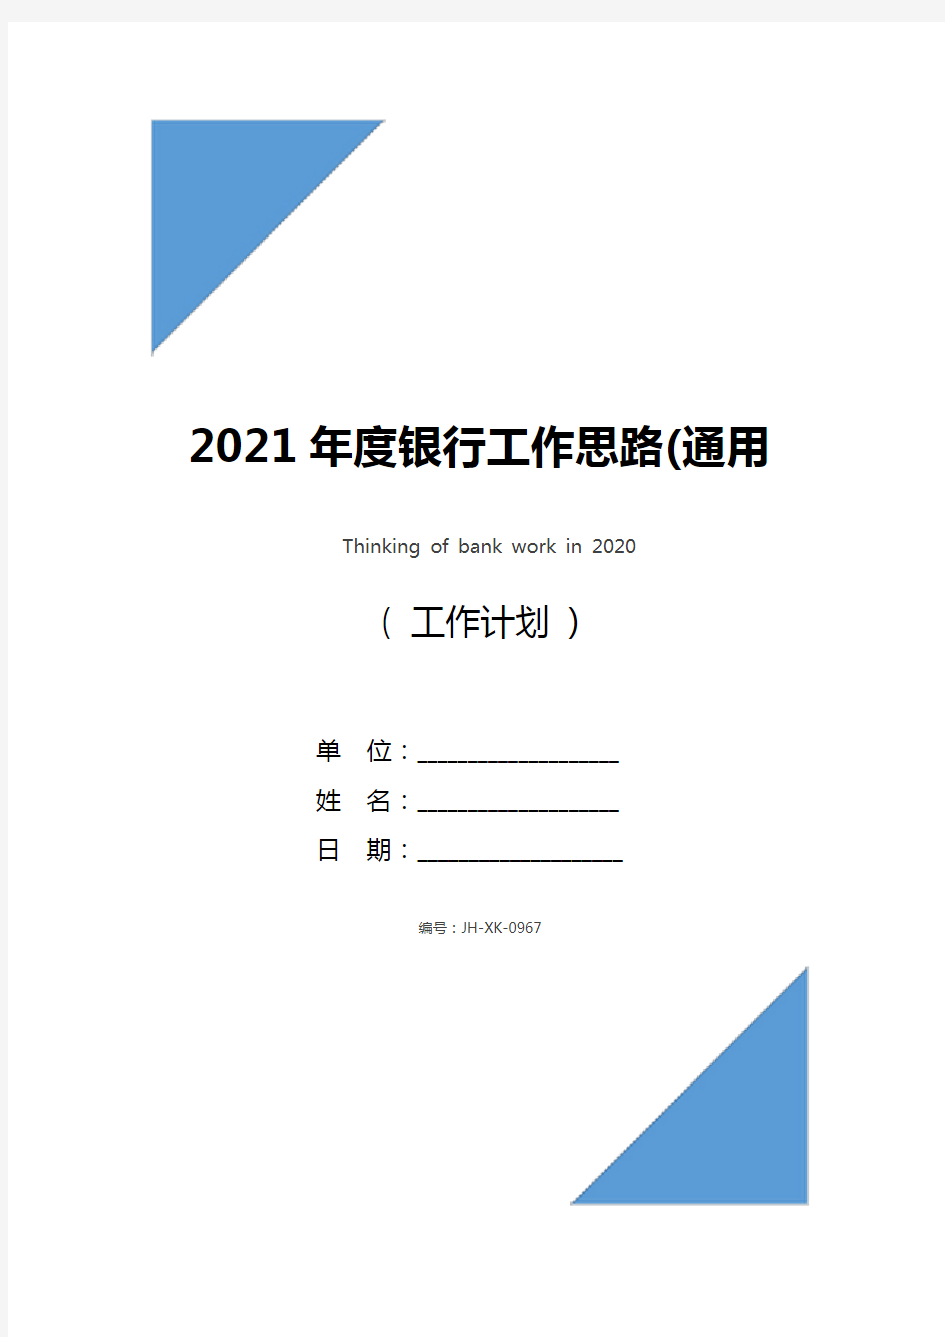 2021年度银行工作思路(通用版)